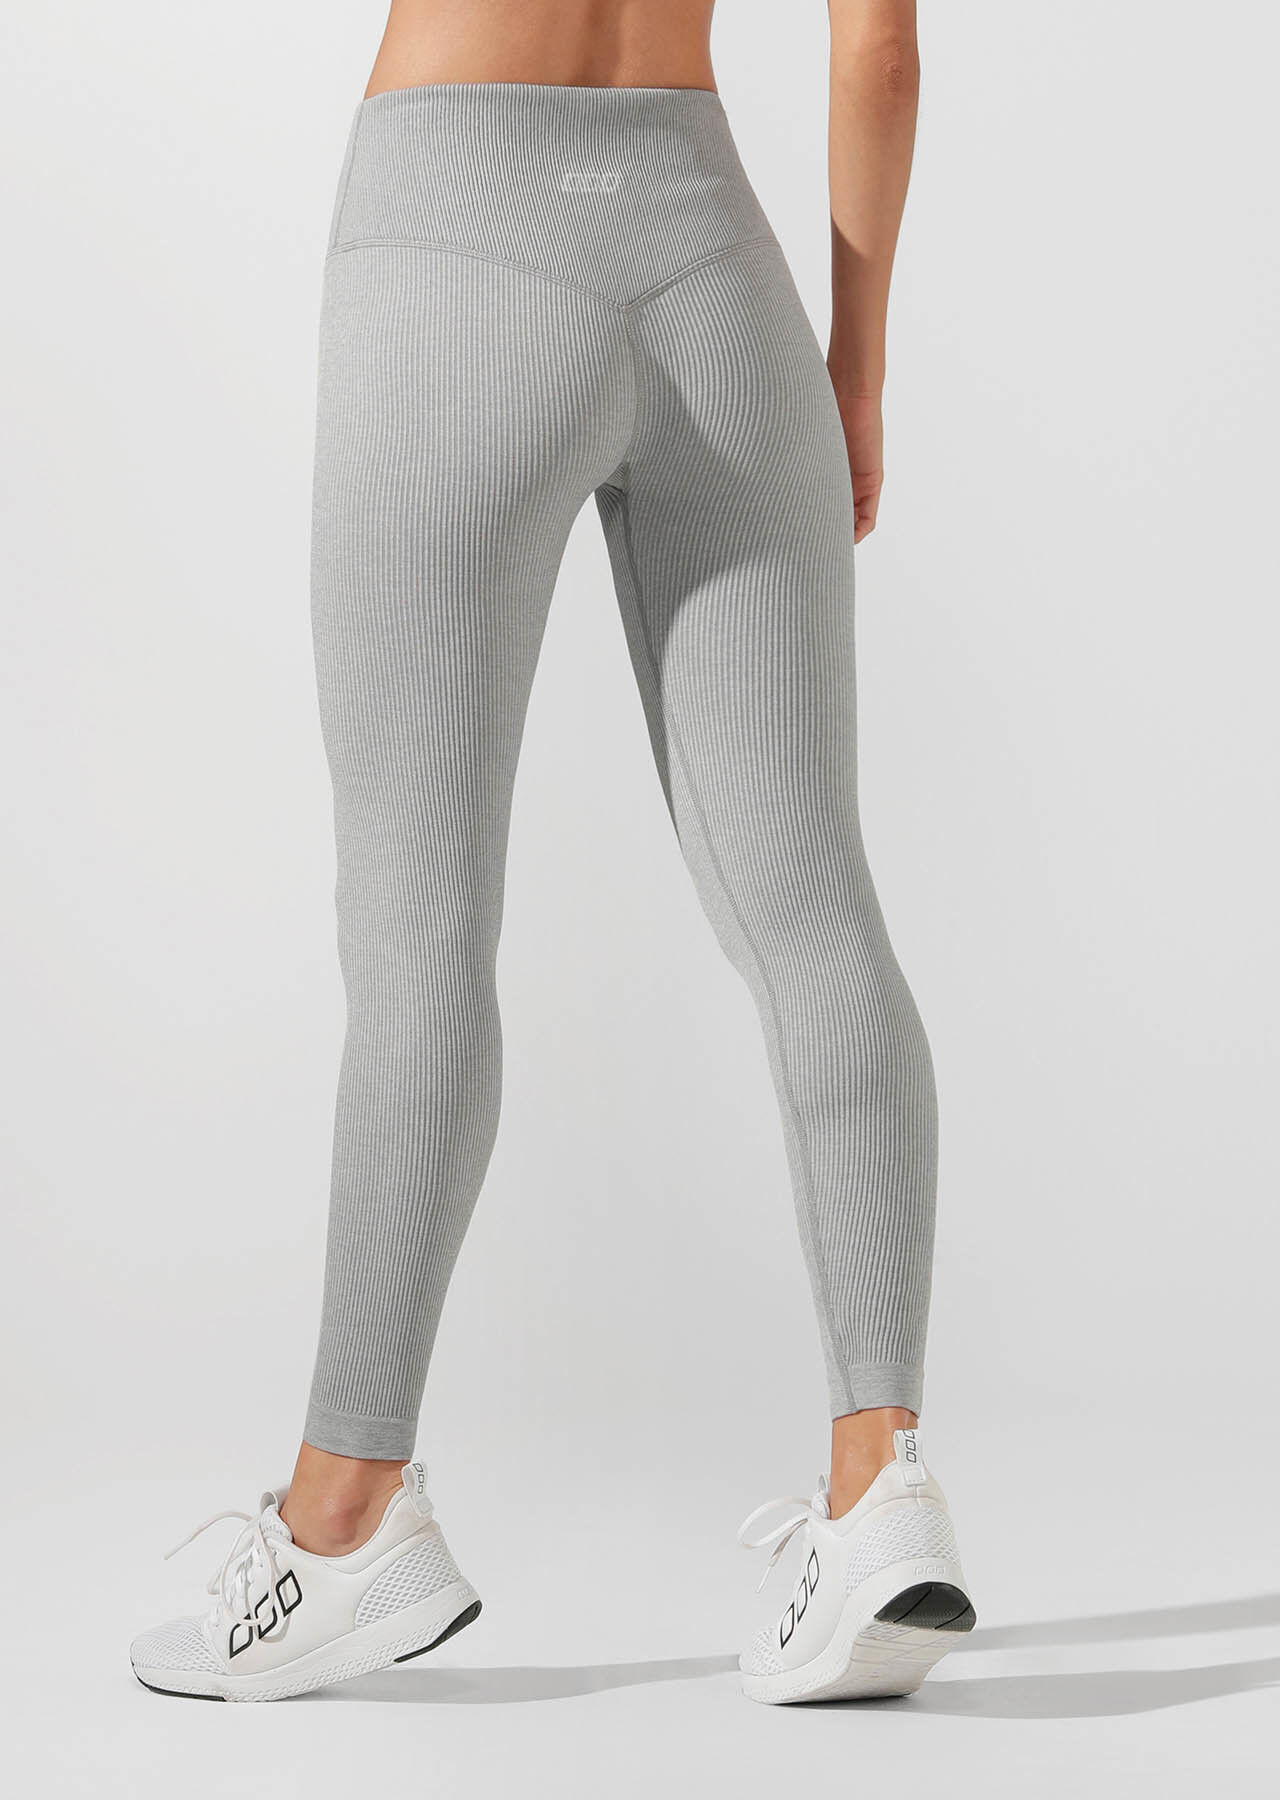 tight grey pants